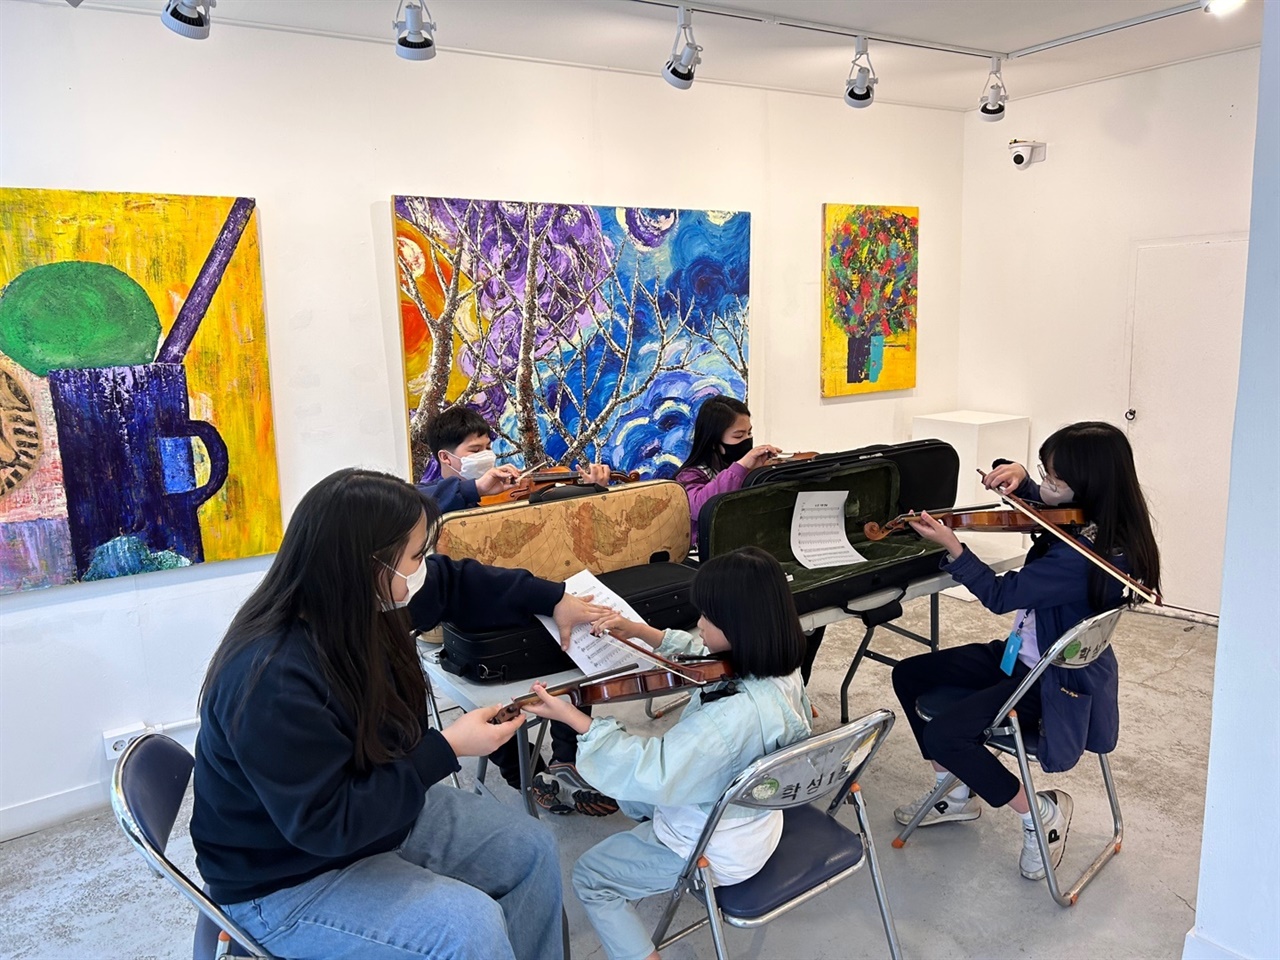 2020 공공미술프로젝트의 일환으로 마련된 '동네 미술관' 건물 내부에서 지역아동들을 위한 바이올린 수업이 진행되고 있다.